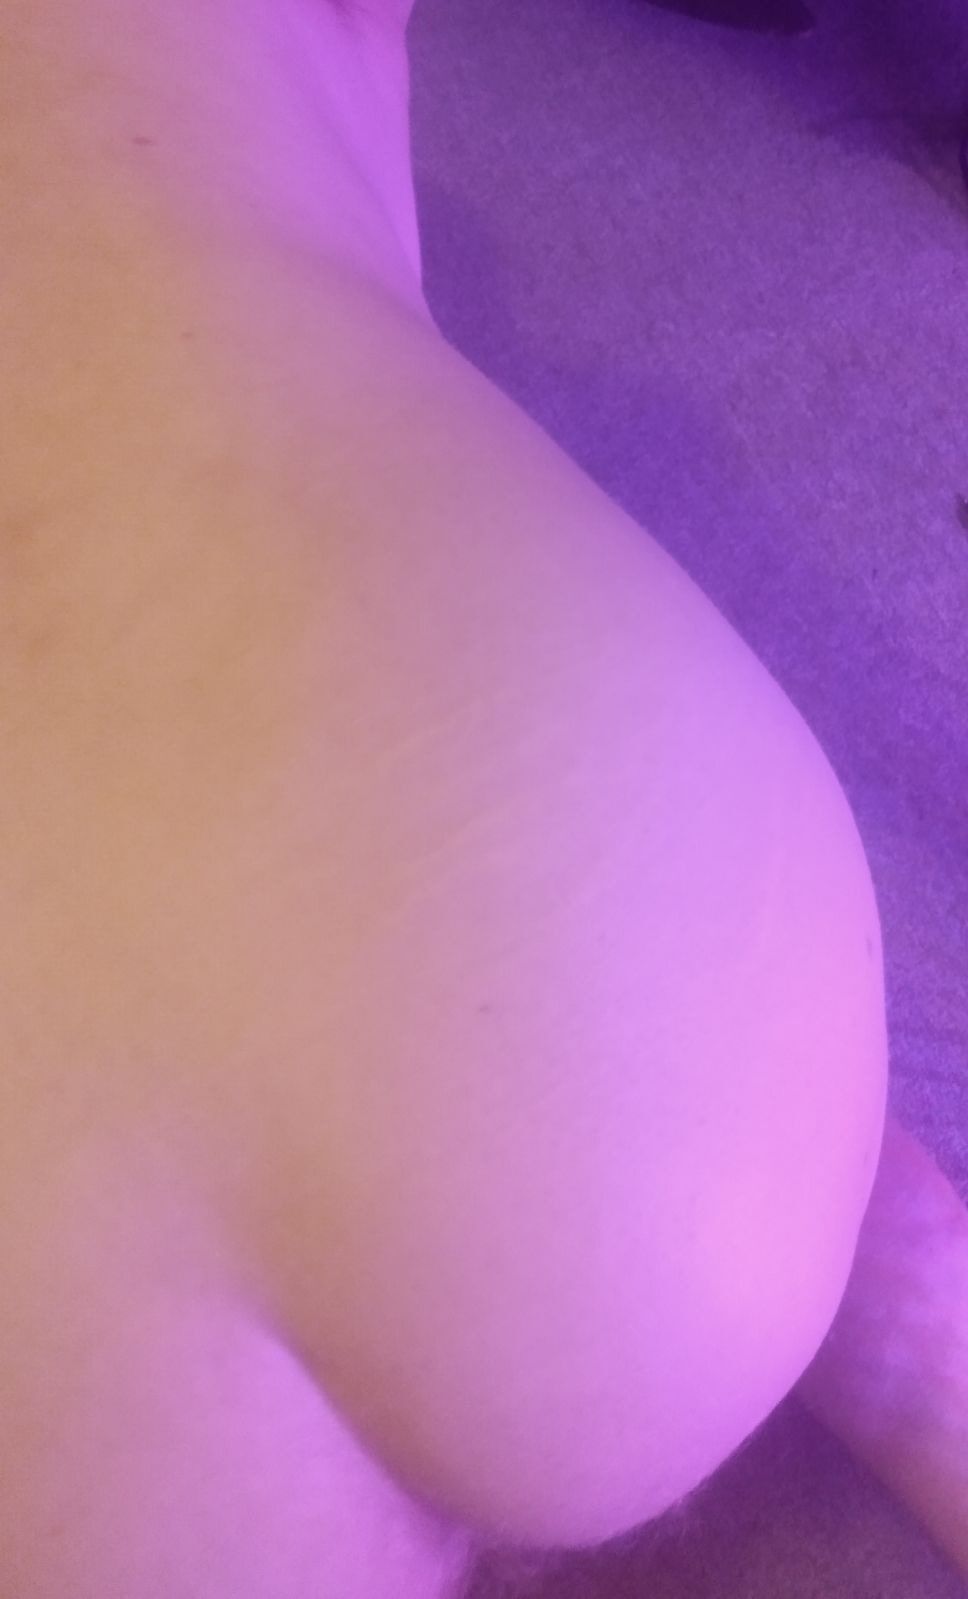 my pale ass